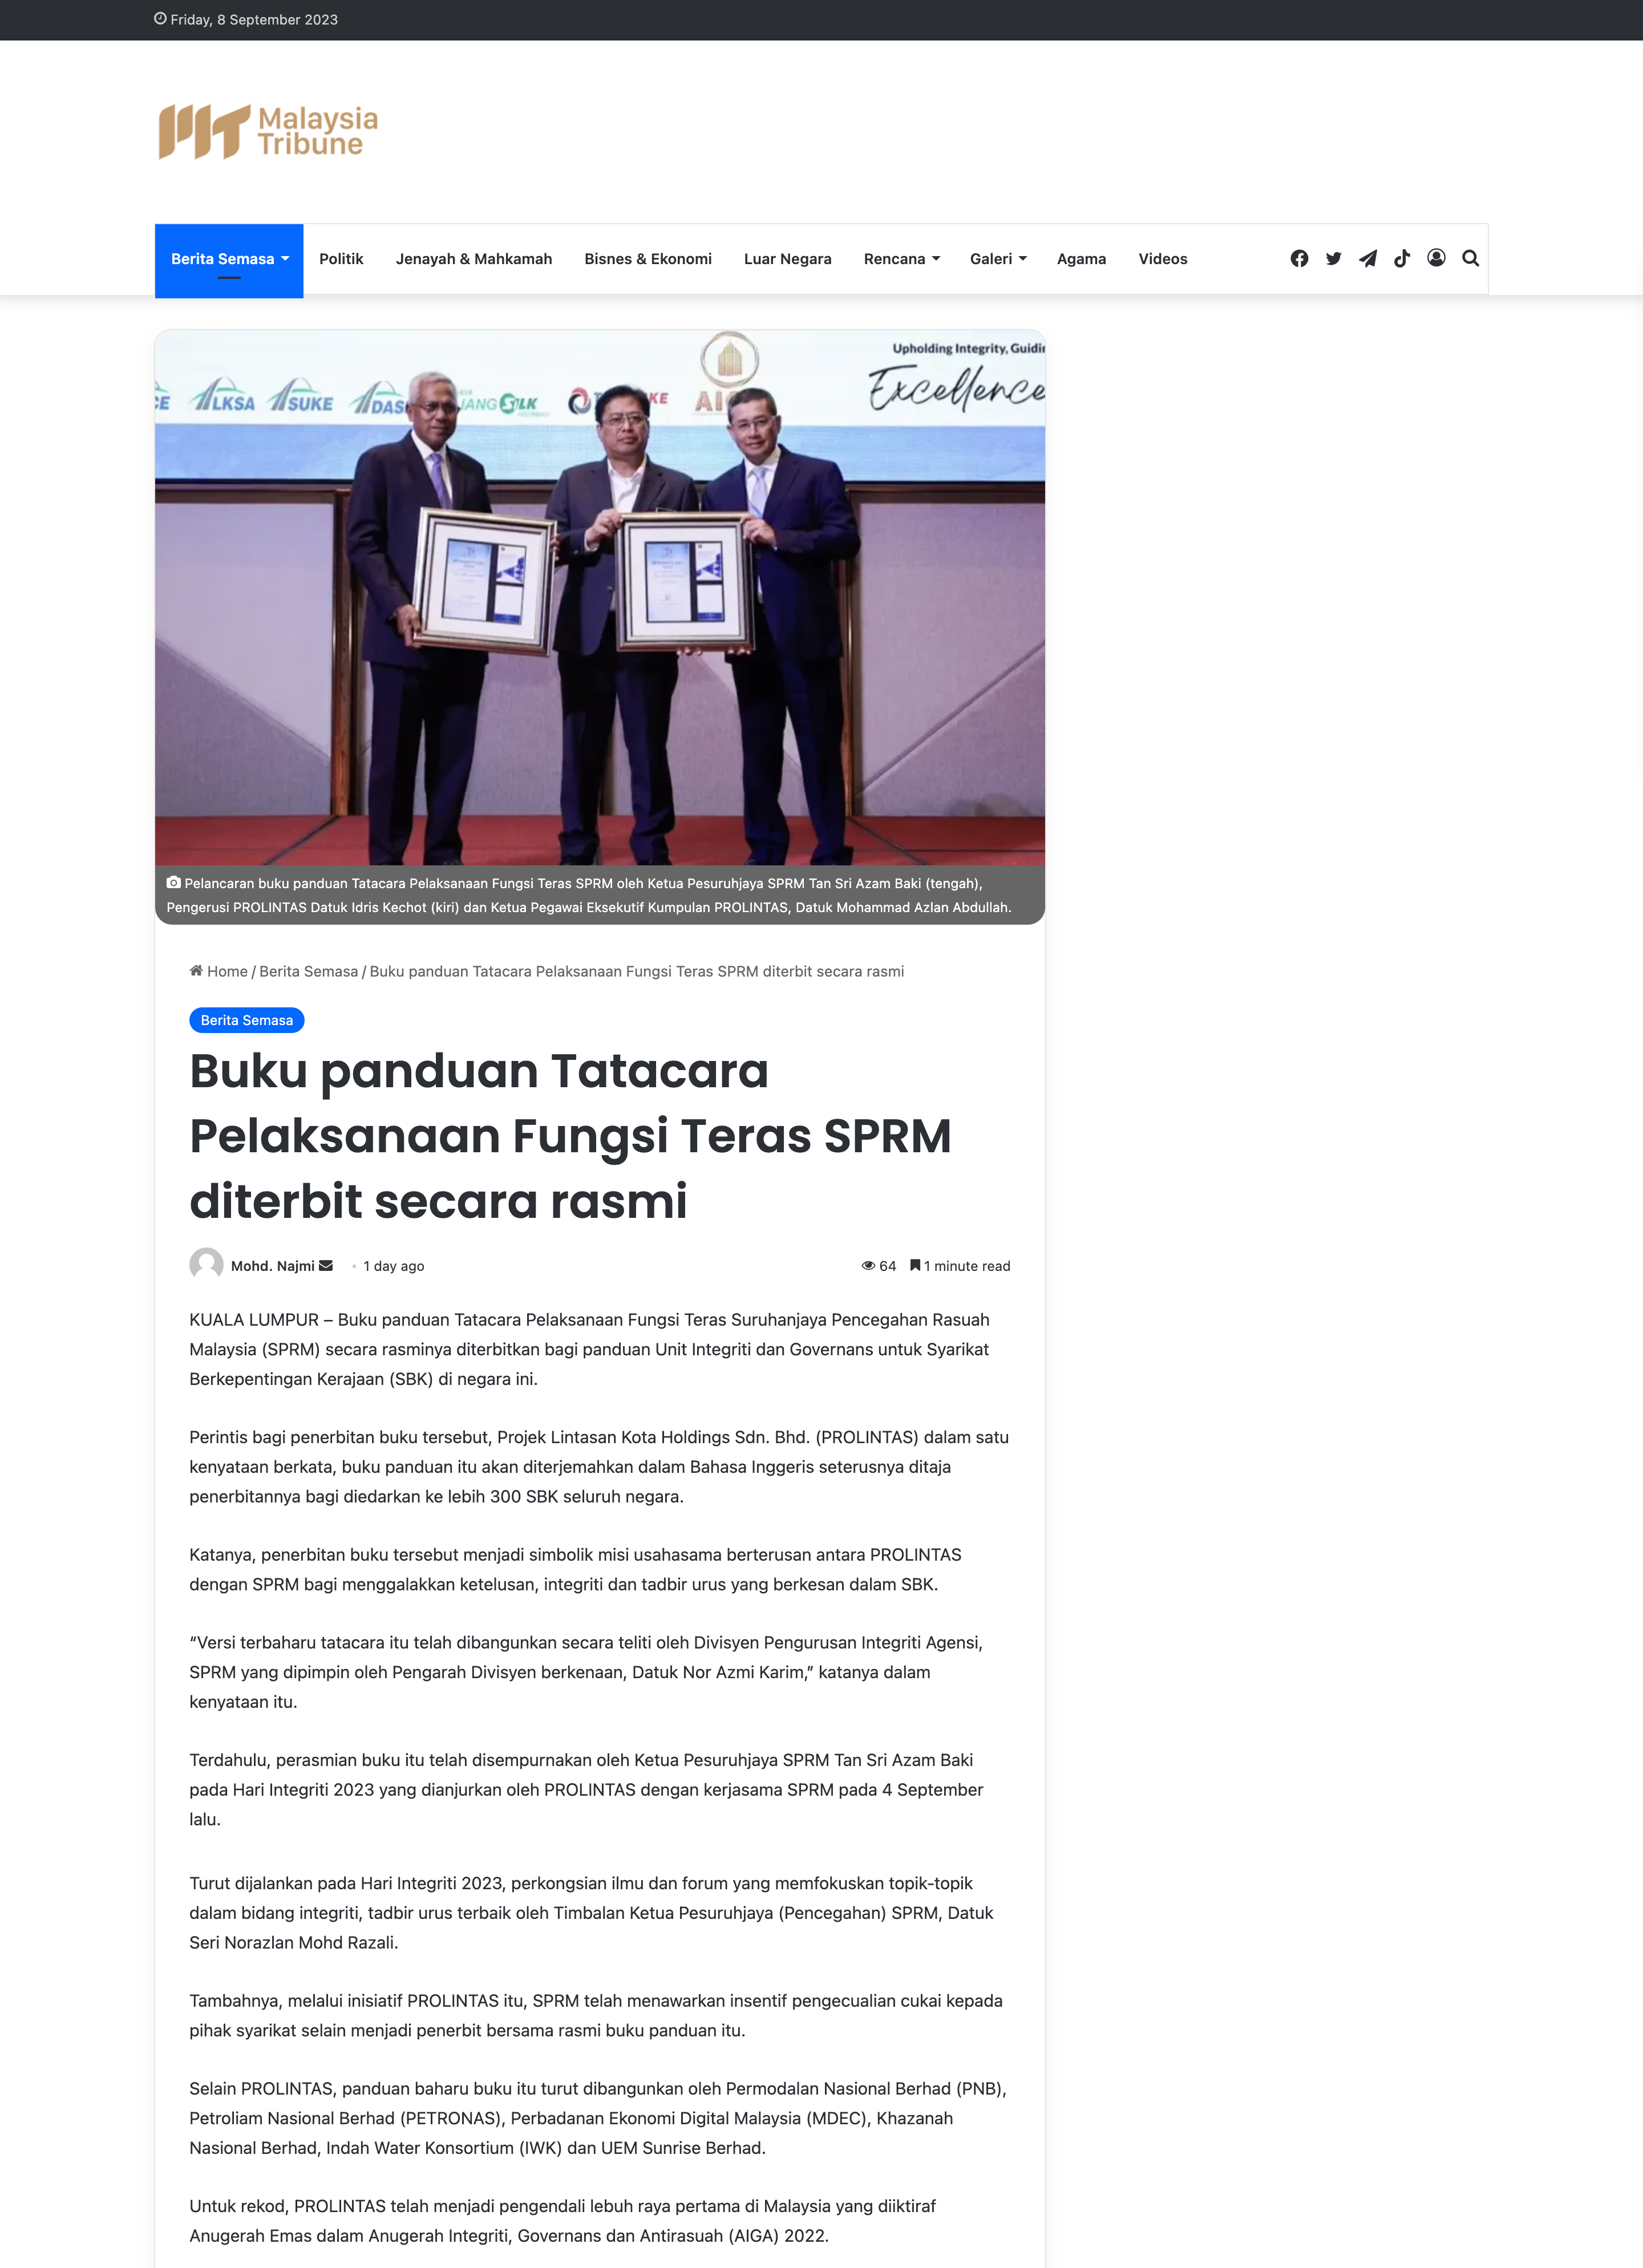 MALAYSIA TRIBUNE | BUKU PANDUAN TATACARA PELAKSANAAN FUNGSI TERAS SPRM DITERBIT SECARA RASMI